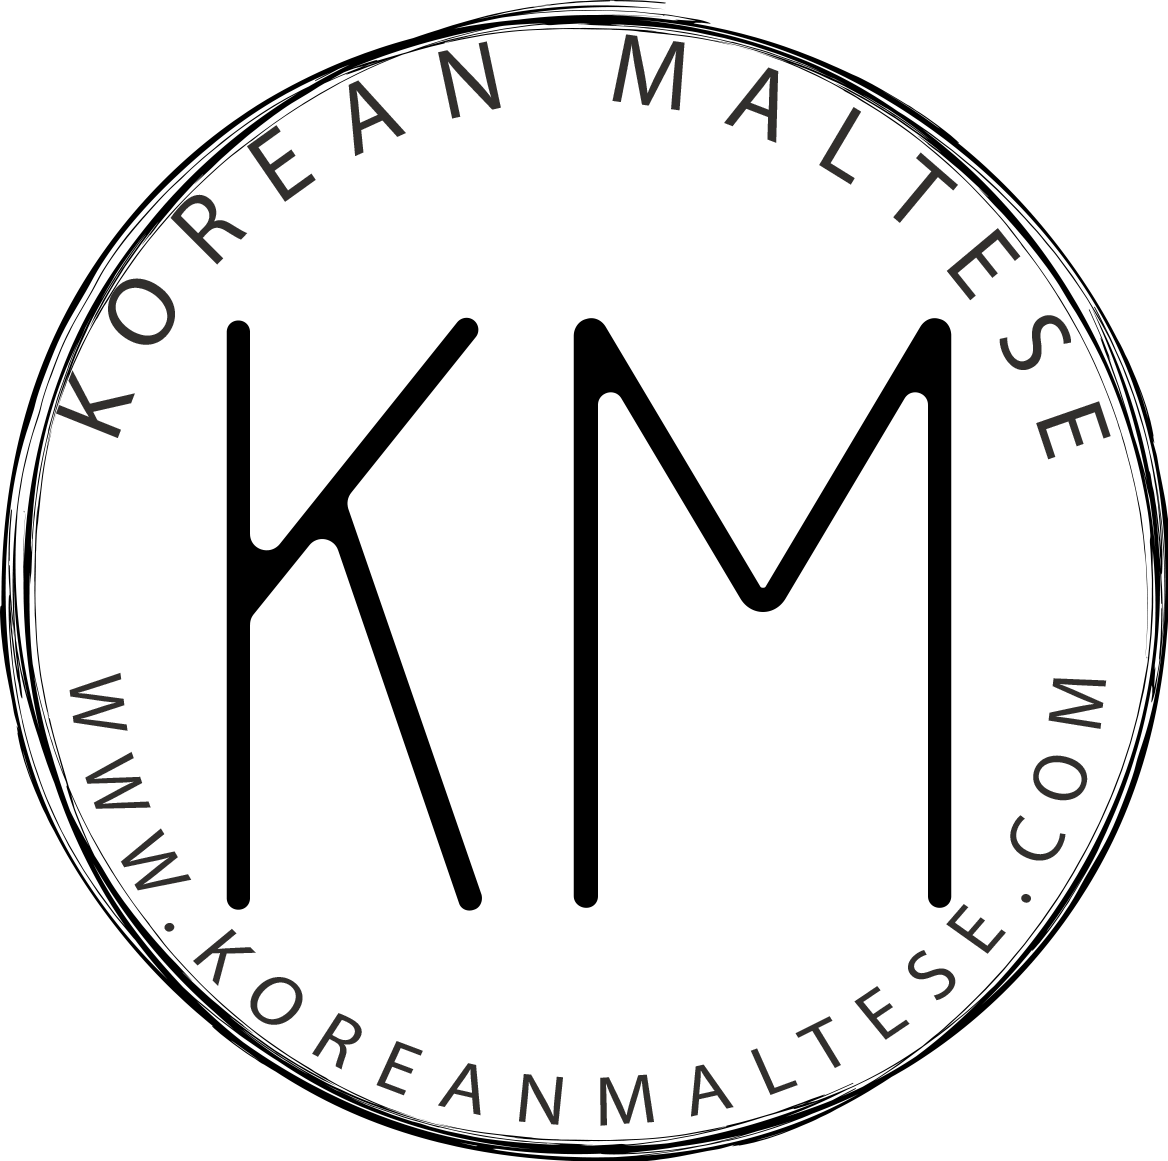 Korean Maltese